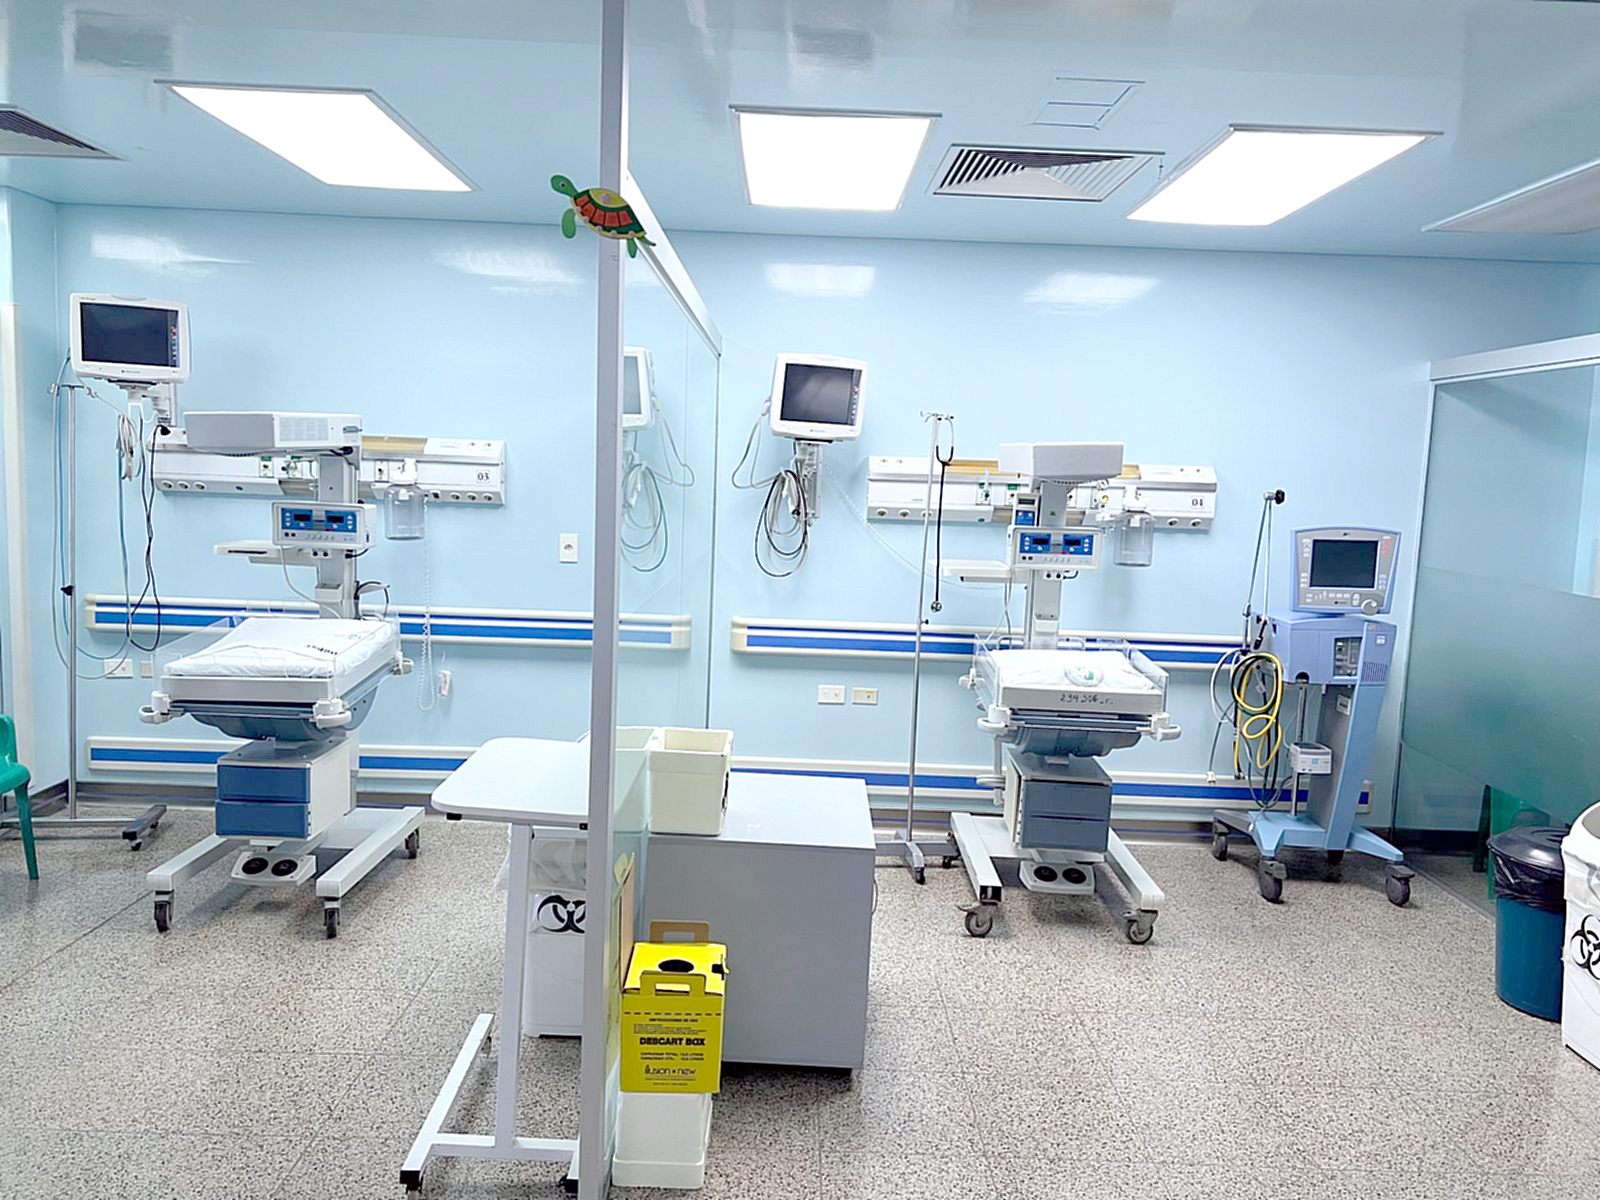 Entrega de equipos biomédicos y visita técnica al Hospital Regional de Ciudad del Este